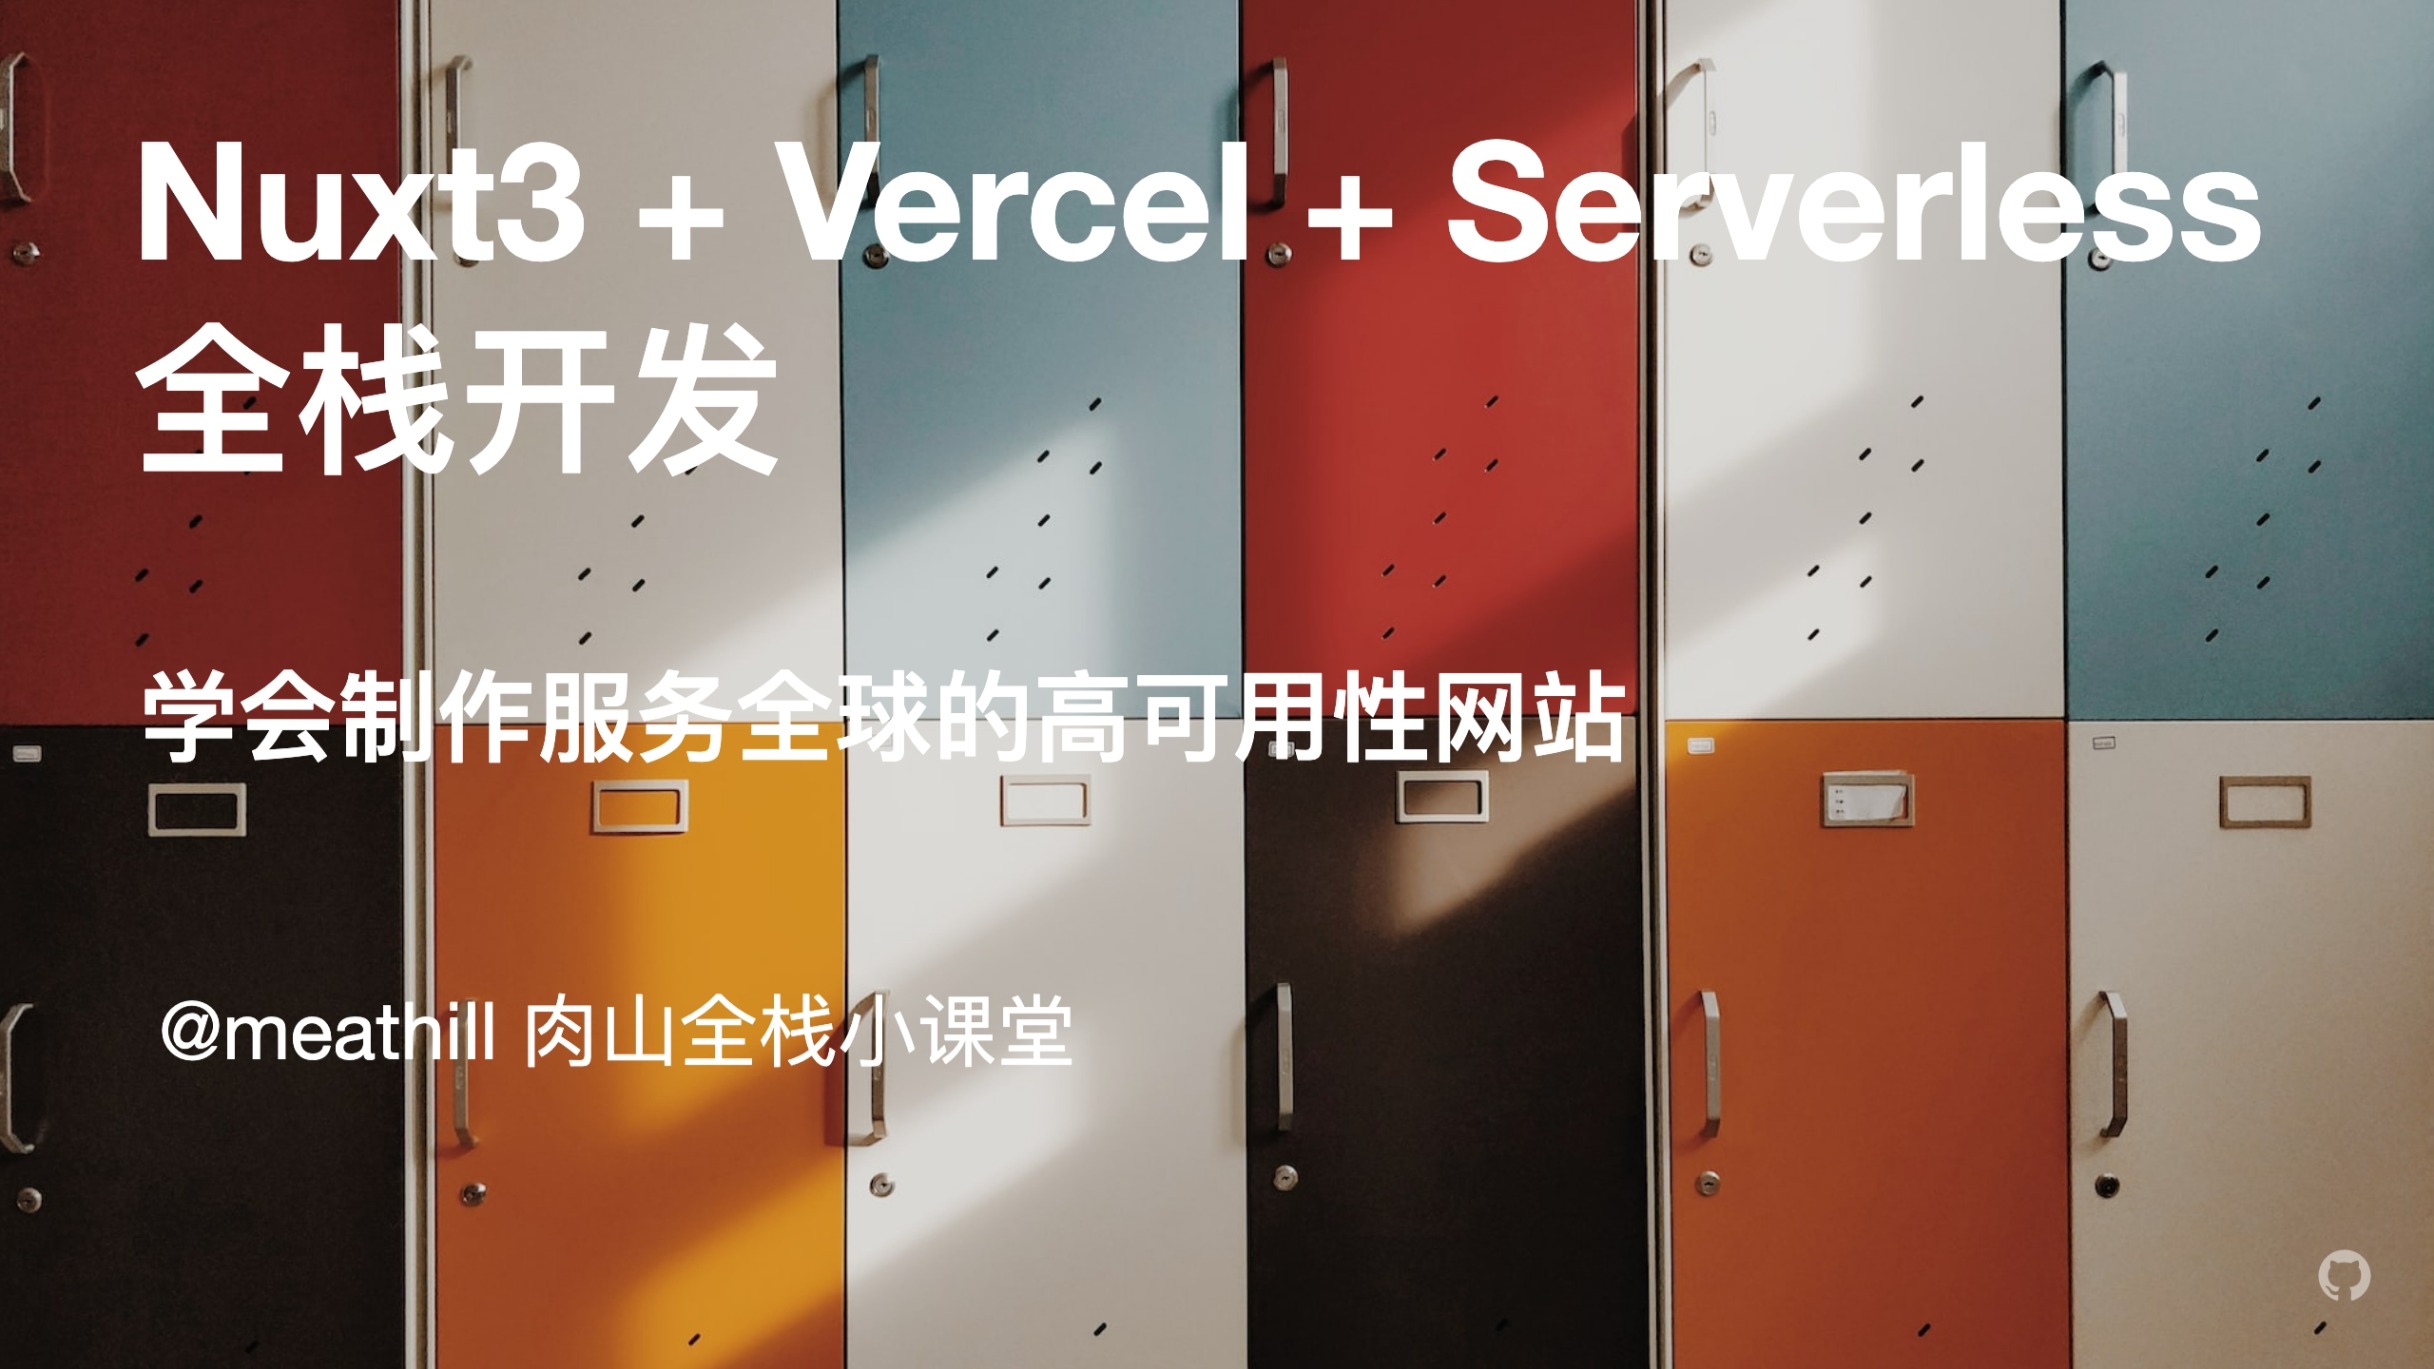 【视频】Nuxt3+Vercel+Serverless 全栈开发（1）：技术选型介绍，项目基础搭建